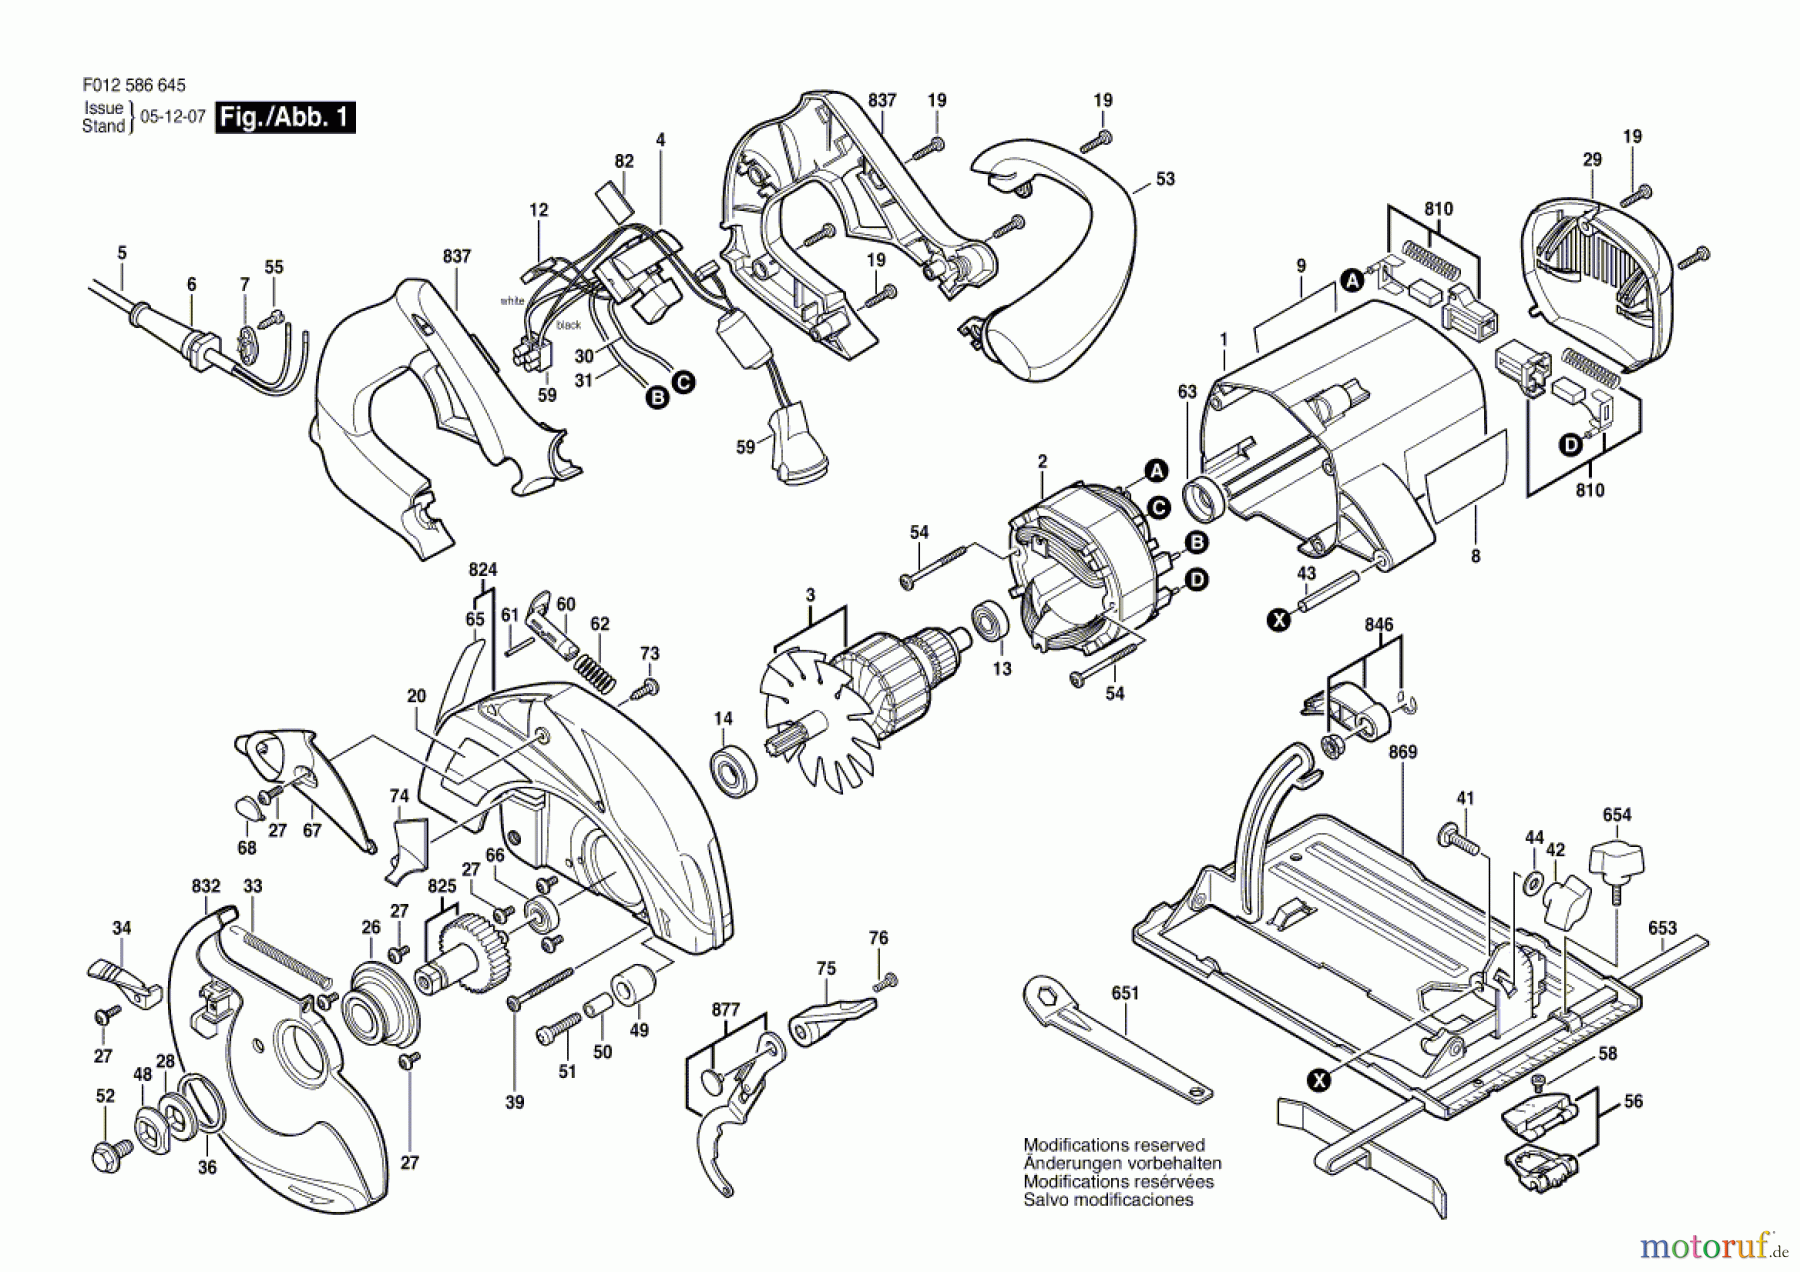  Bosch Werkzeug Handkreissäge 5866 Seite 1